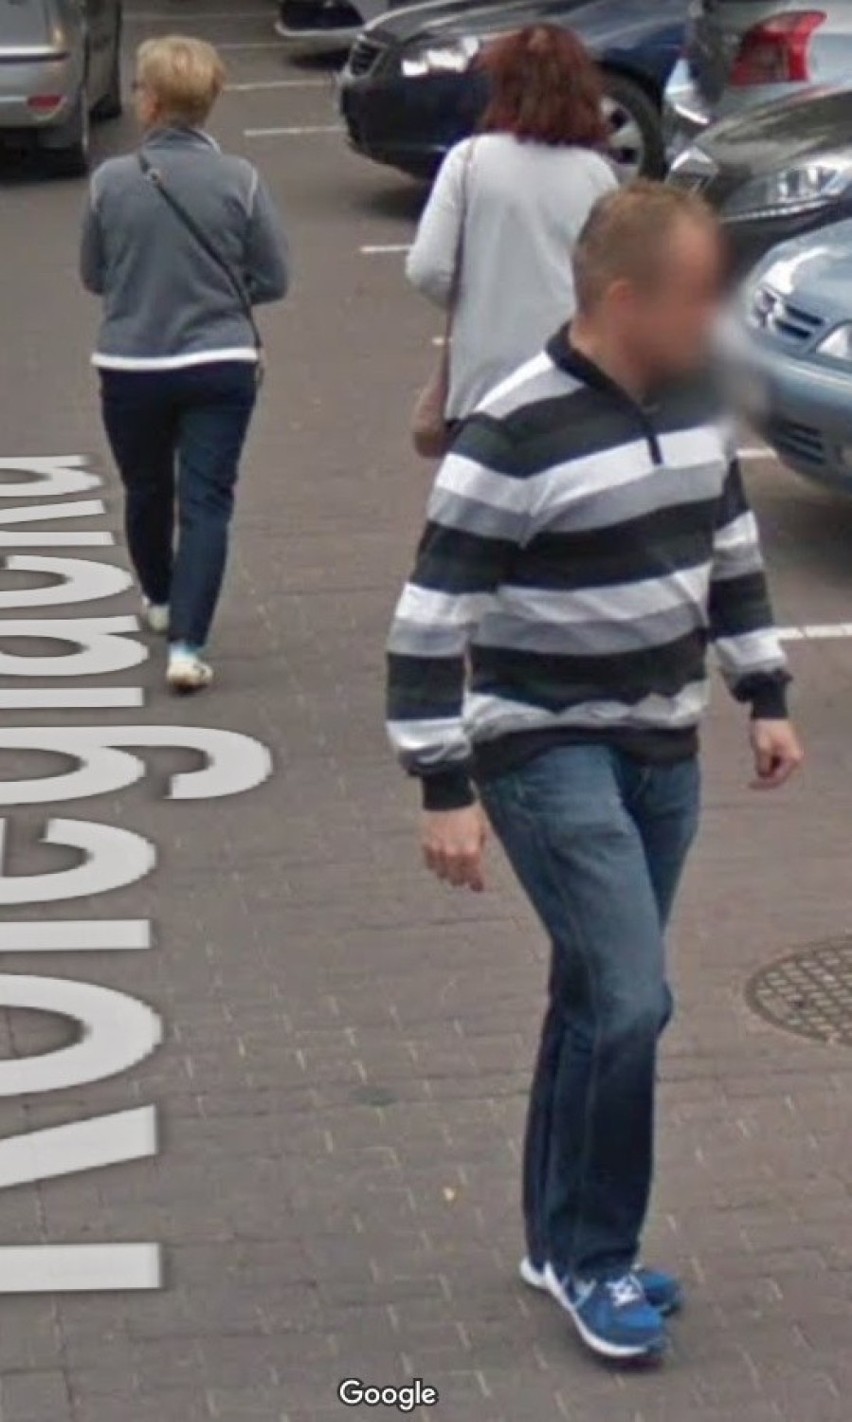 Moda po zamojsku. Takie codzienne stylizacje uchwyciły kamery Google Street View w Zamościu. Czy mieszkańcy znają się na modzie?